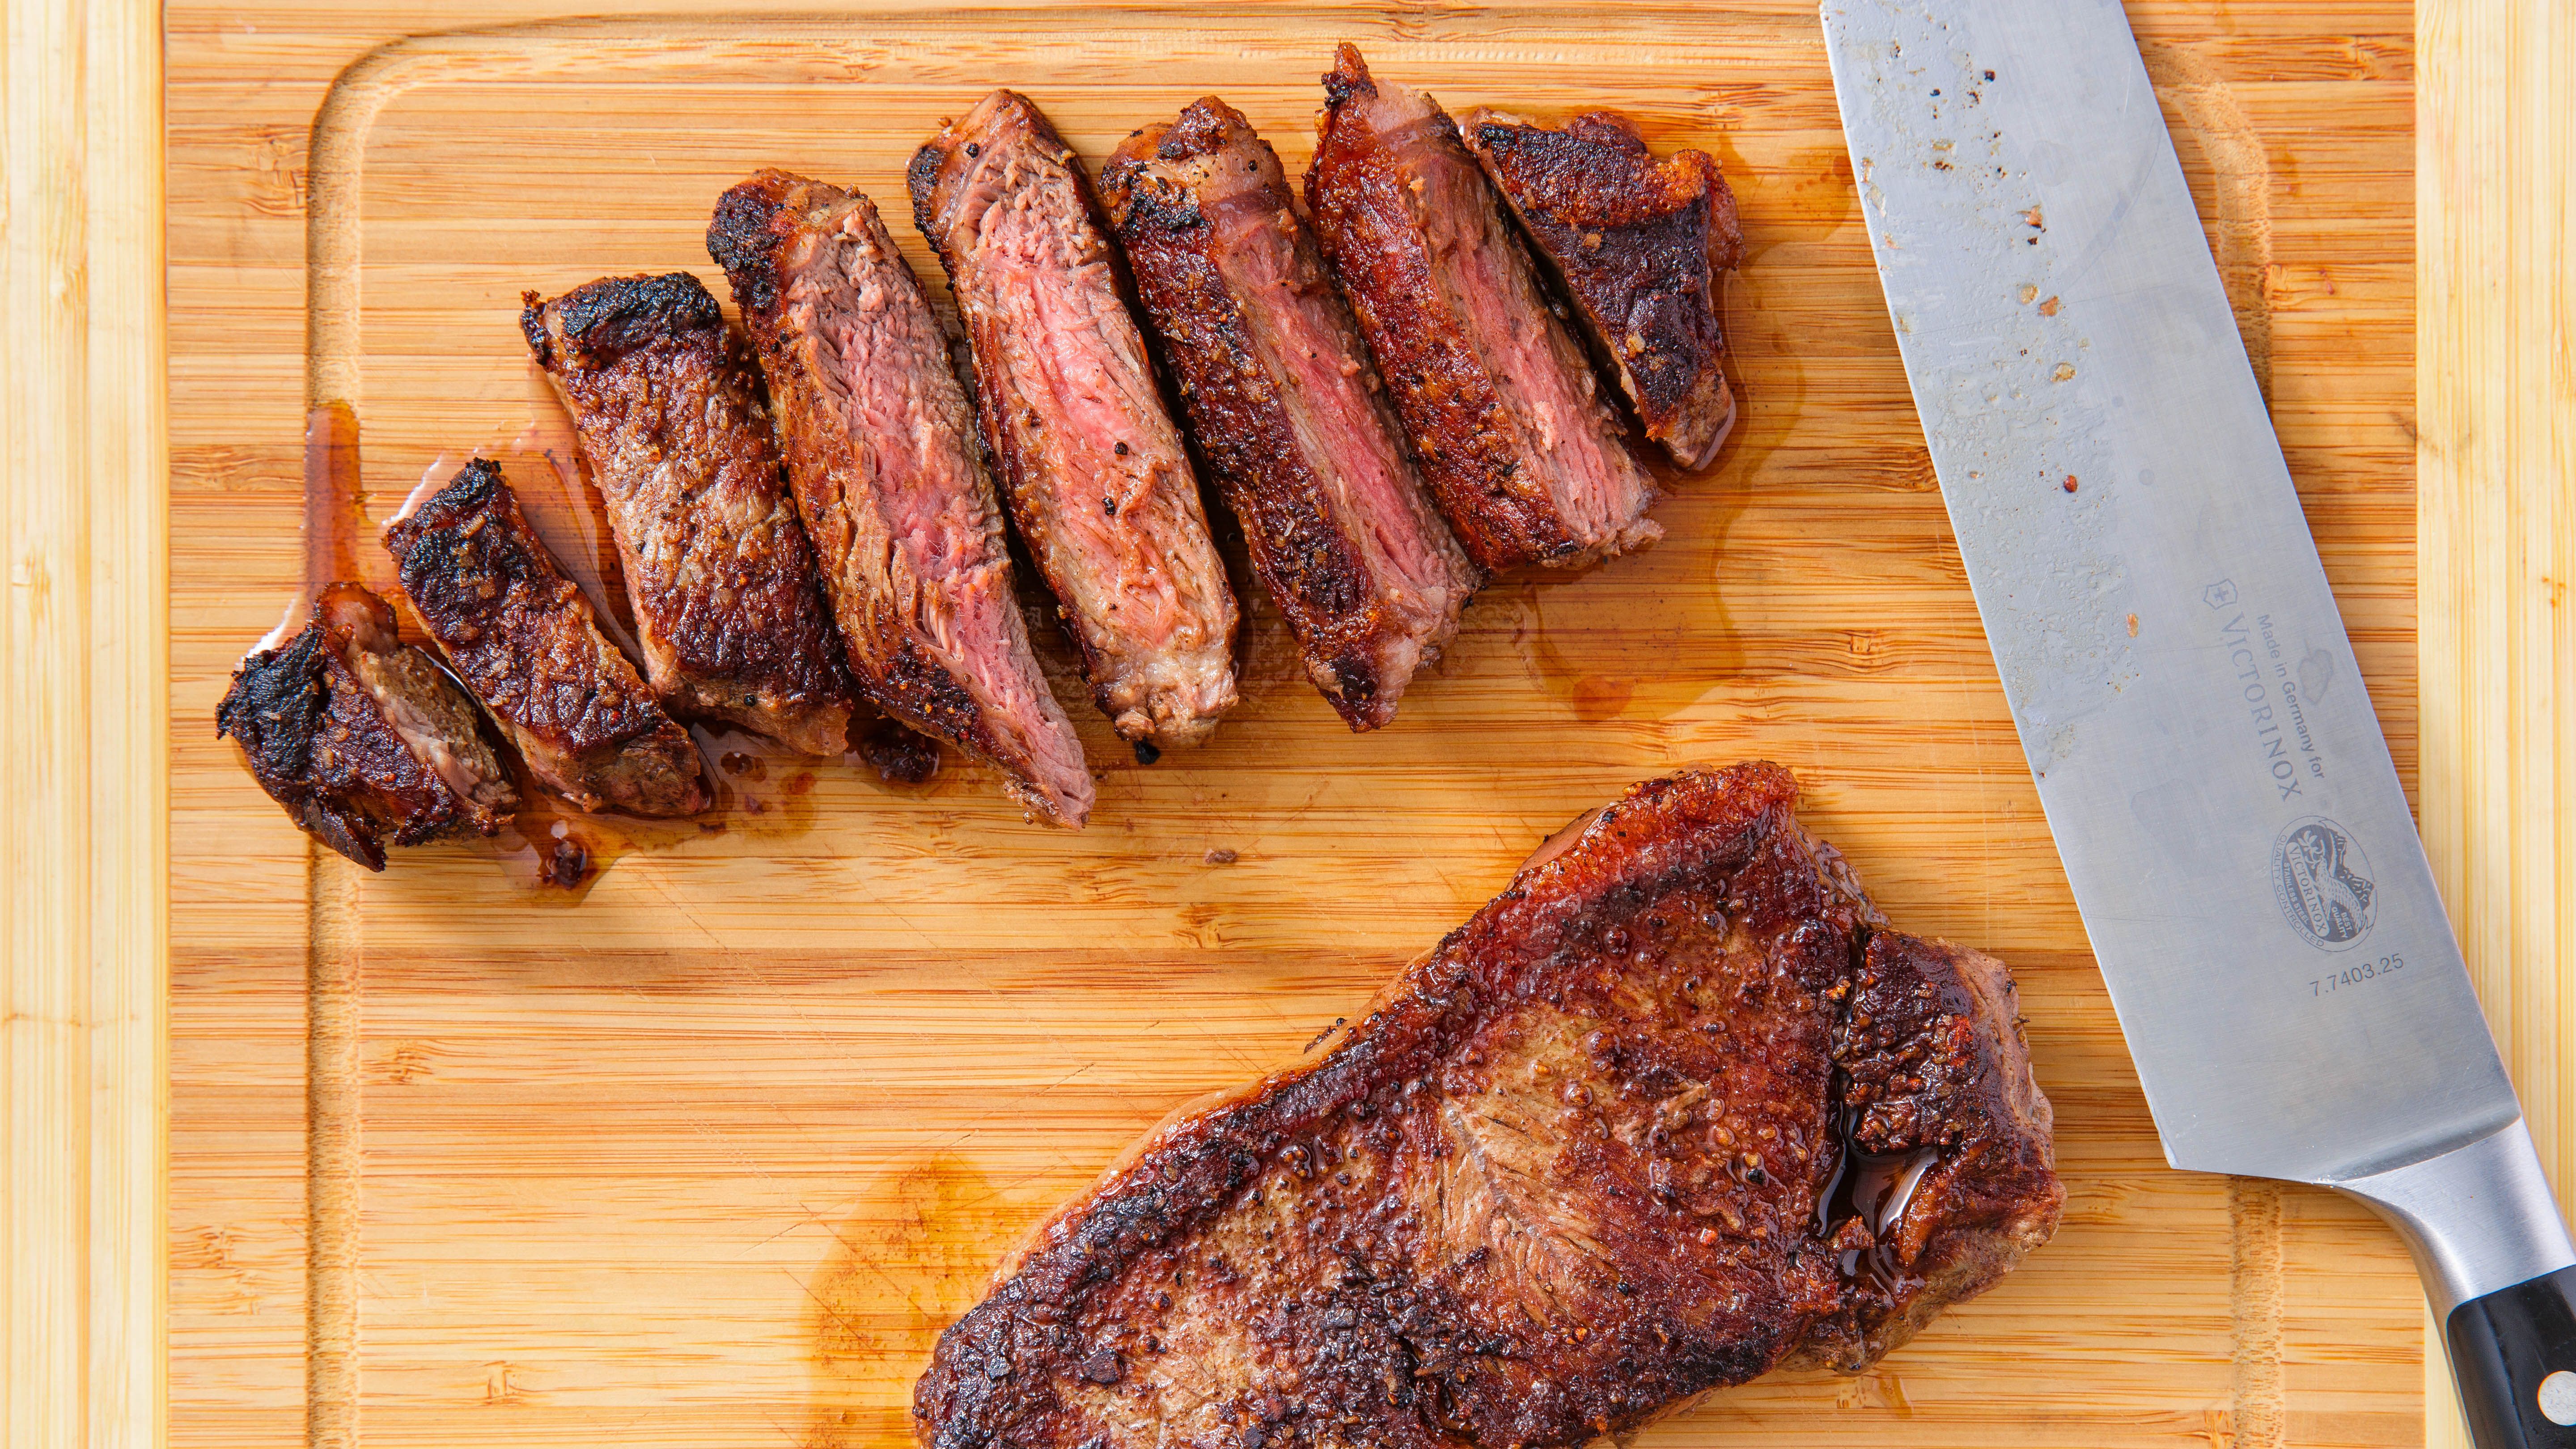 The Perfect Medium Rare Steak Recipe (Video!)